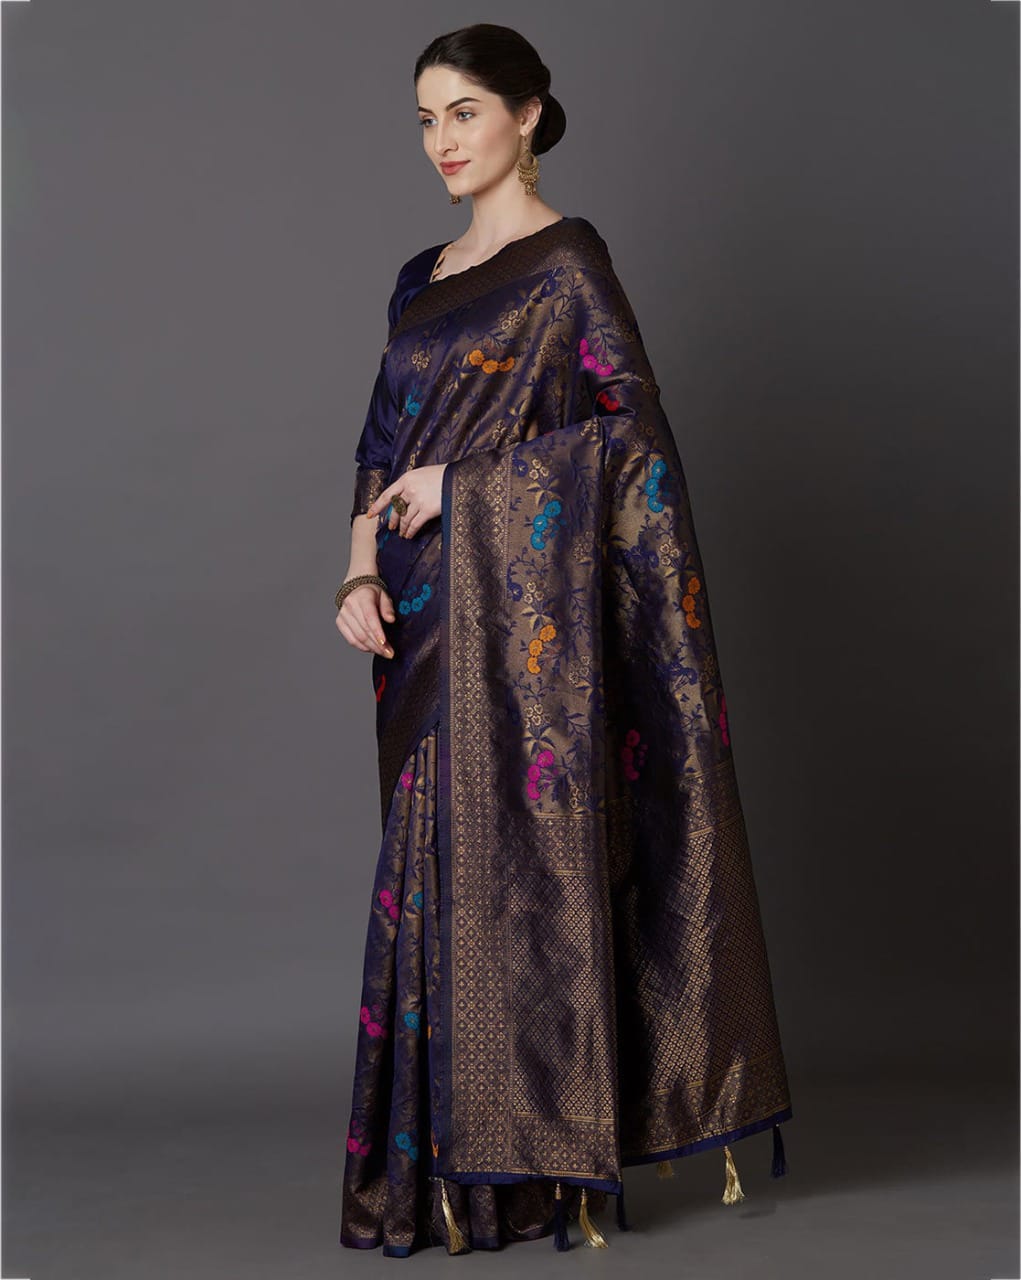 Brood Navy Blue Soft Banarasi Silk Saree With Intricate Blouse Piece - Colorful Saree